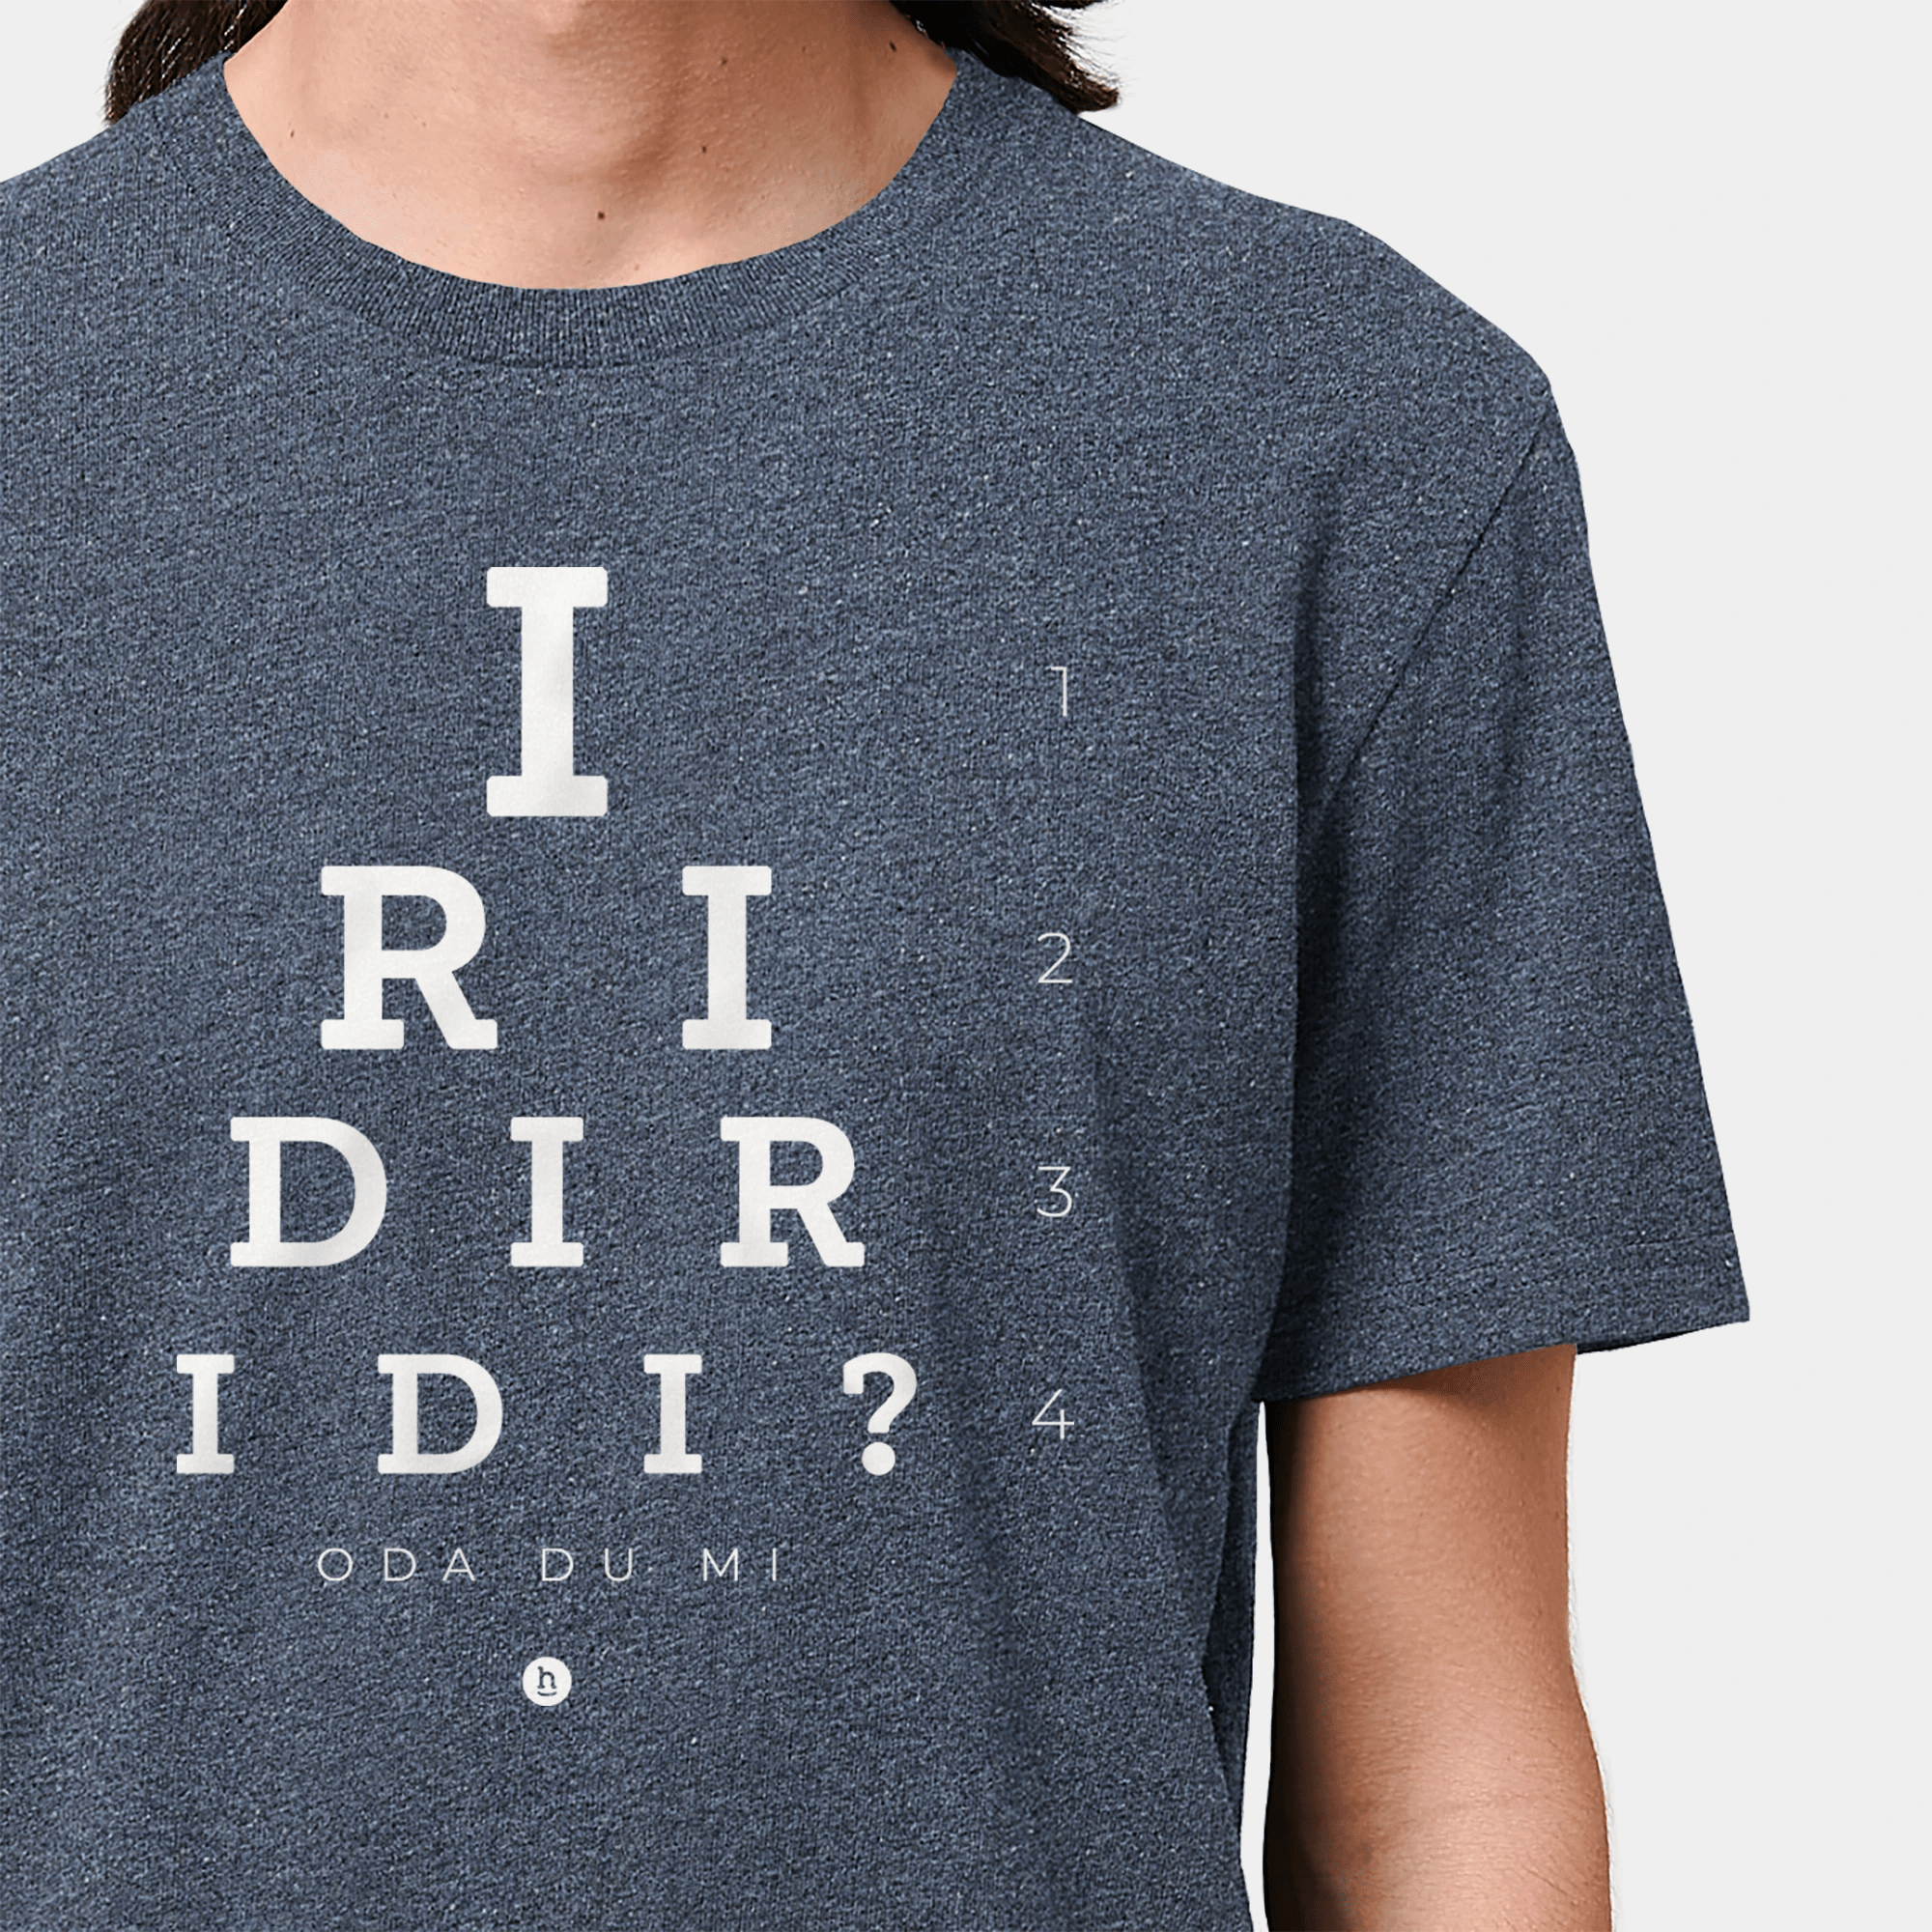 HEITER & LÄSSIG T-Shirt "Iridiridi" S / RE-navy - aus nachhaltiger und fairer Produktion